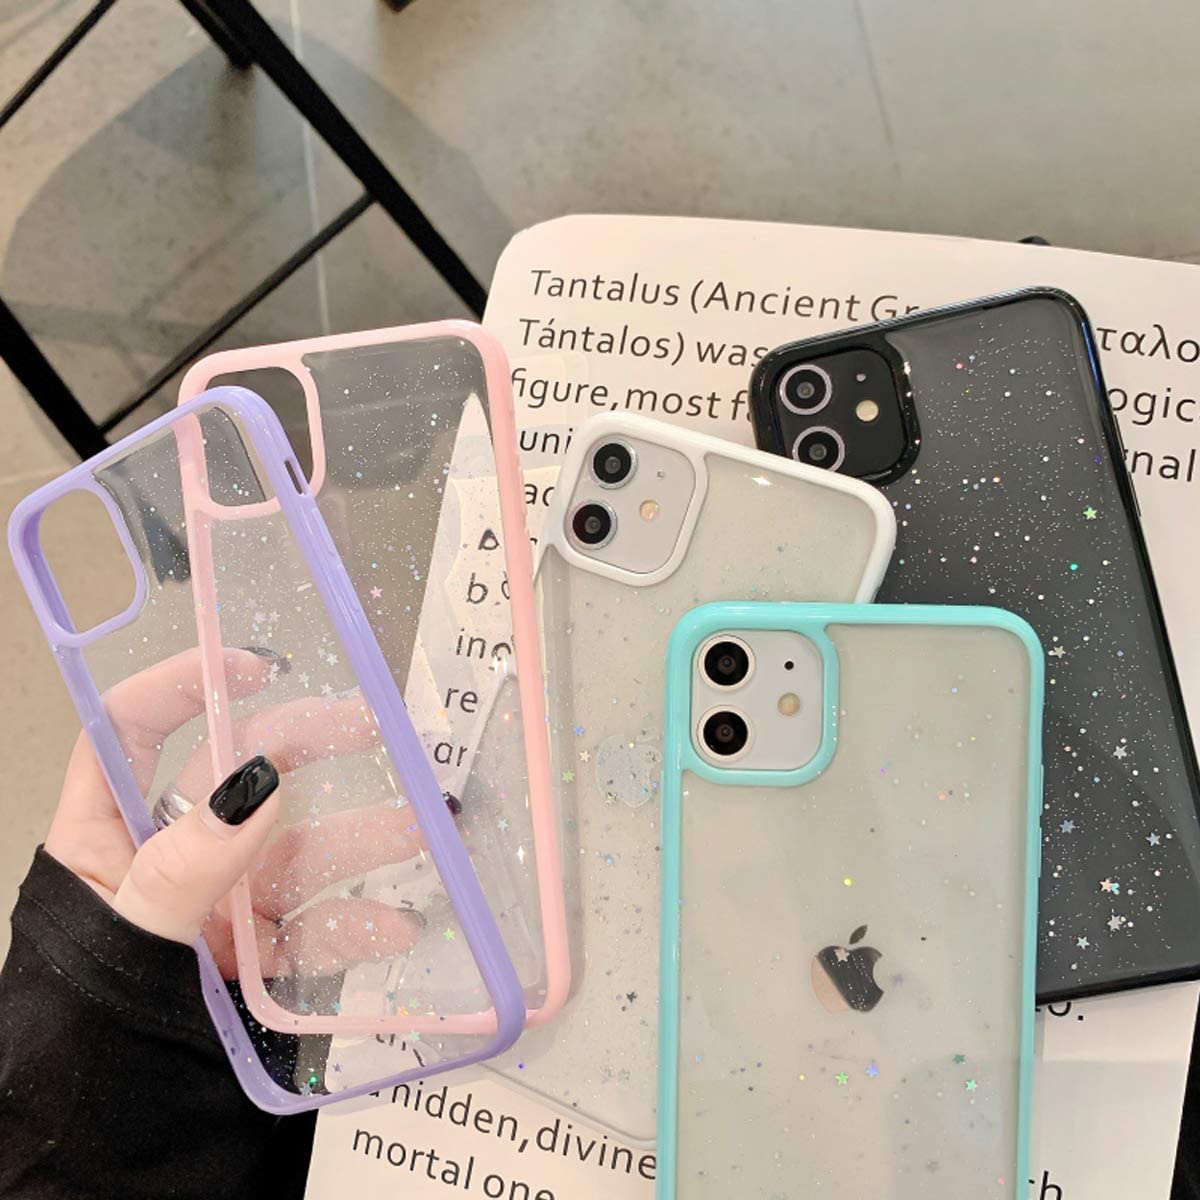 A-One Brand - Bling Star Glitter Skal till iPhone 11 - Rosa